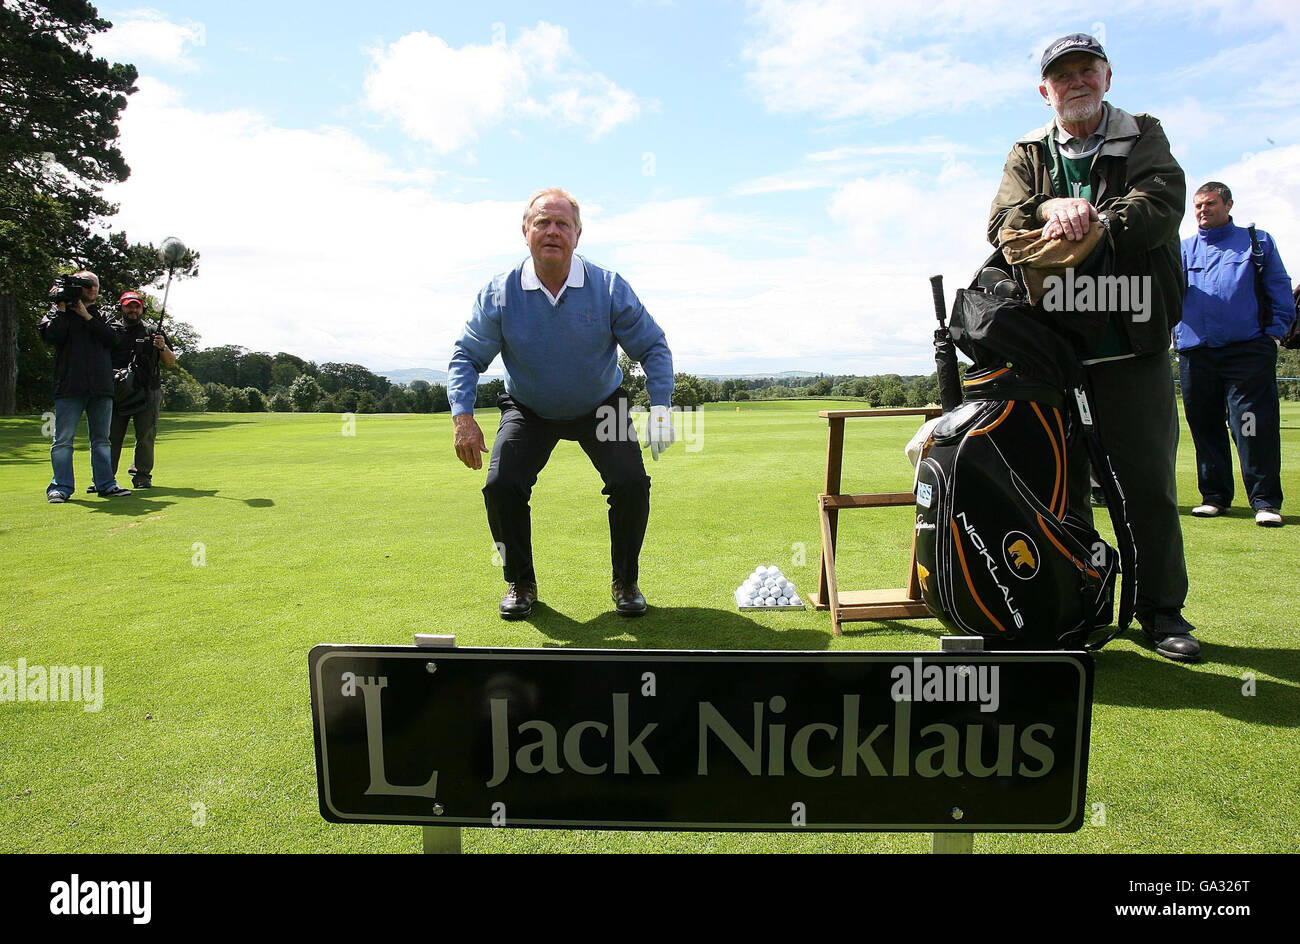 Golf - Jack Nicklaus - Luttrellstown Castle and Golf Resort. Jack Nicklaus während eines Besuchs im Luttrellstown Castle and Golf Resort in Dublin. Stockfoto